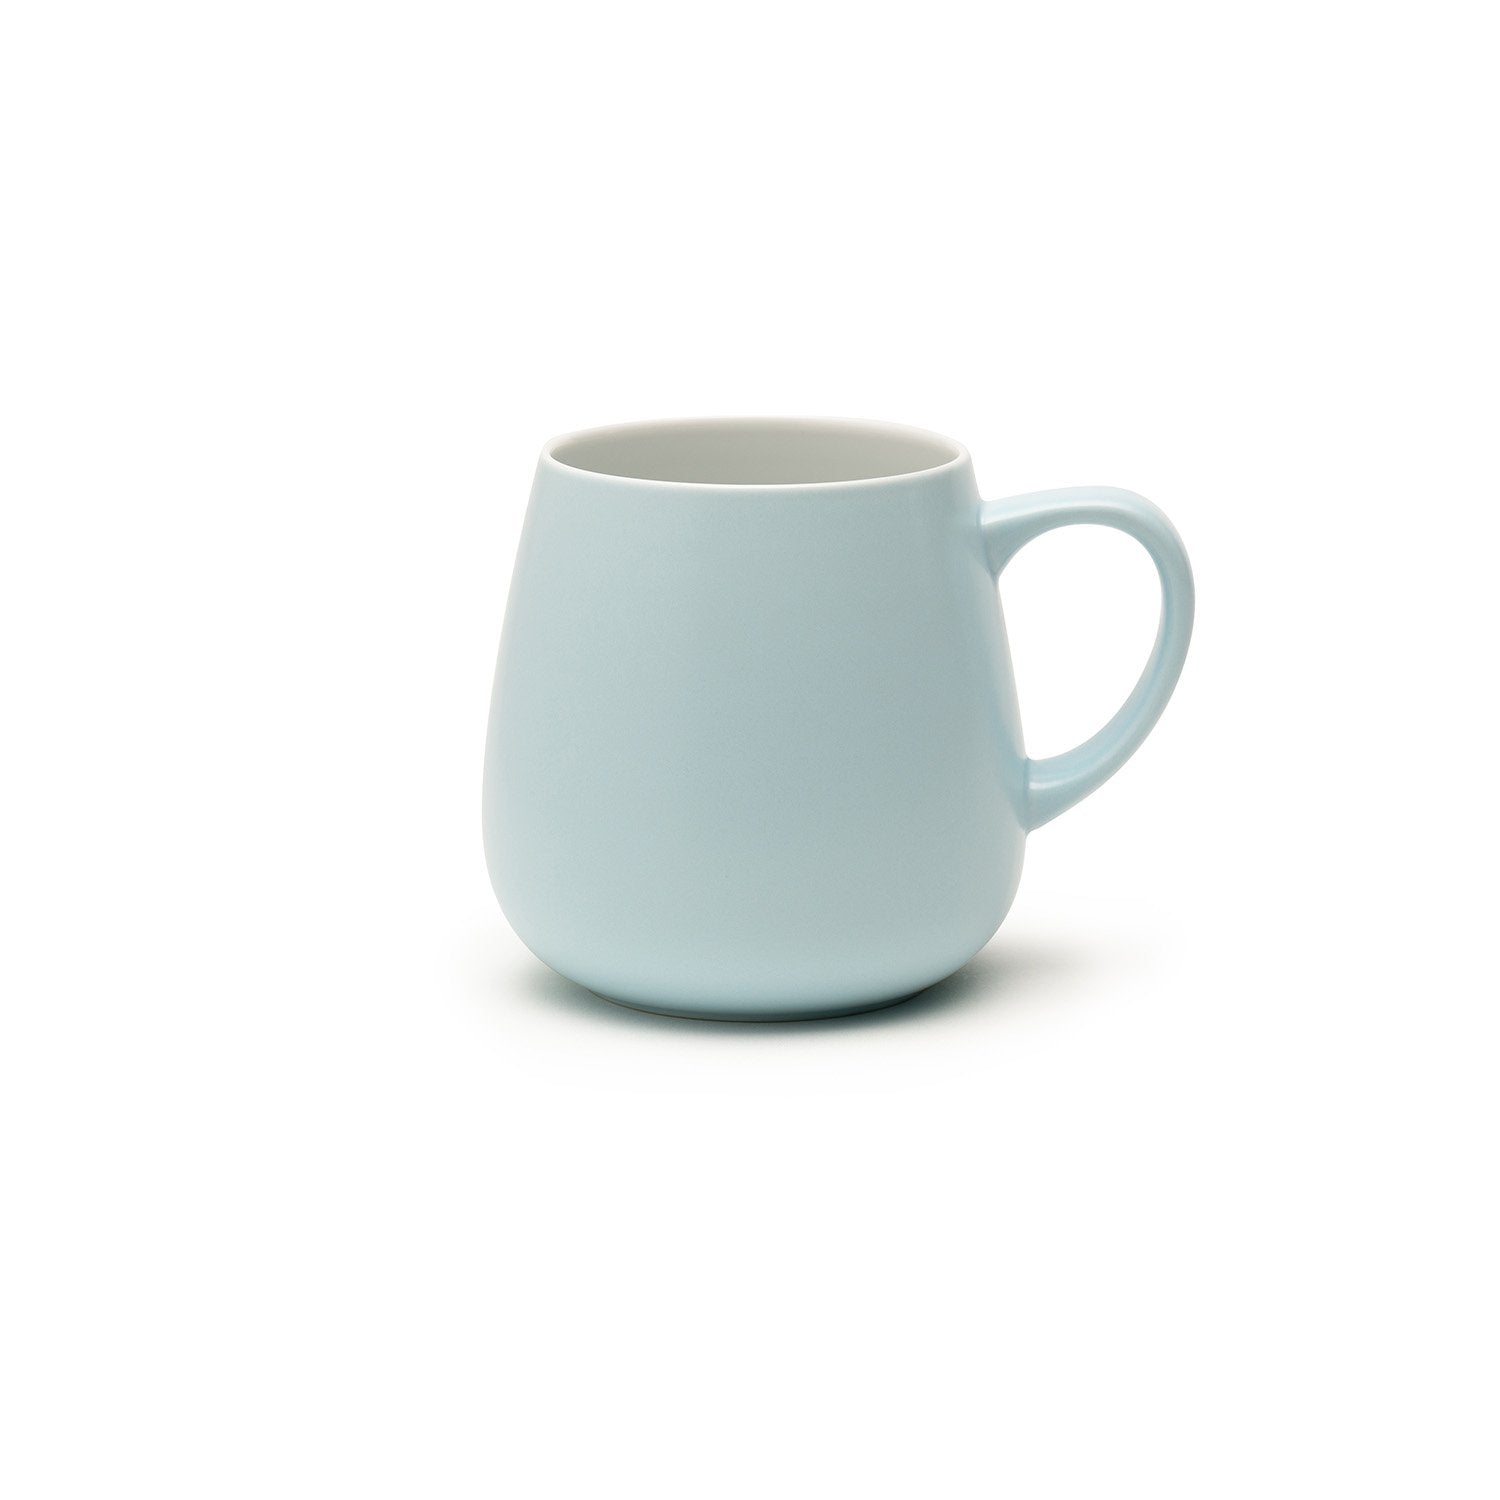 Large light blue mug